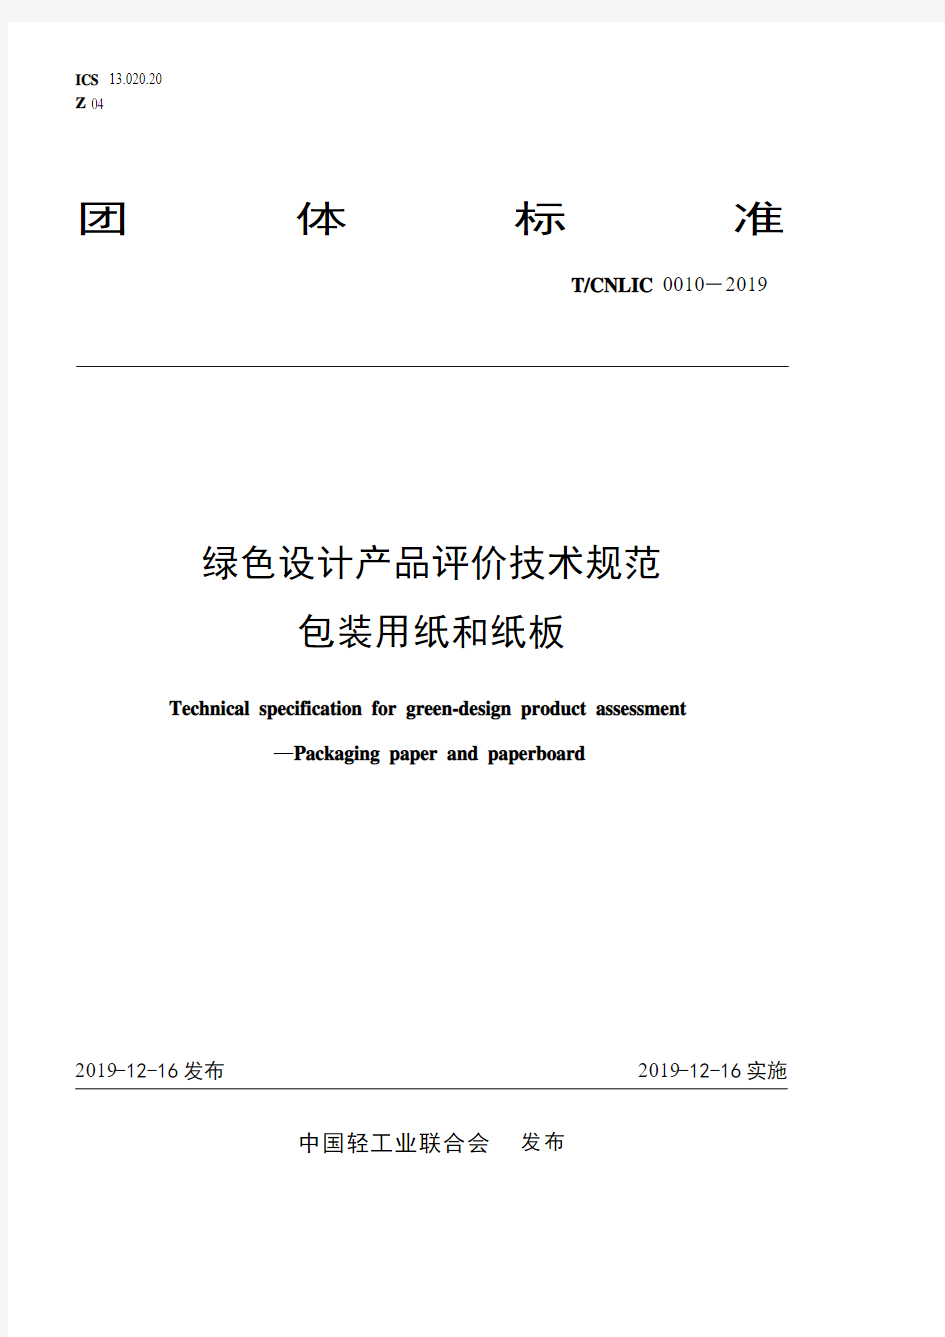 《绿色设计产品评价技术规范 包装用纸和纸板》____T_CNLIC 0010-2019.pdf